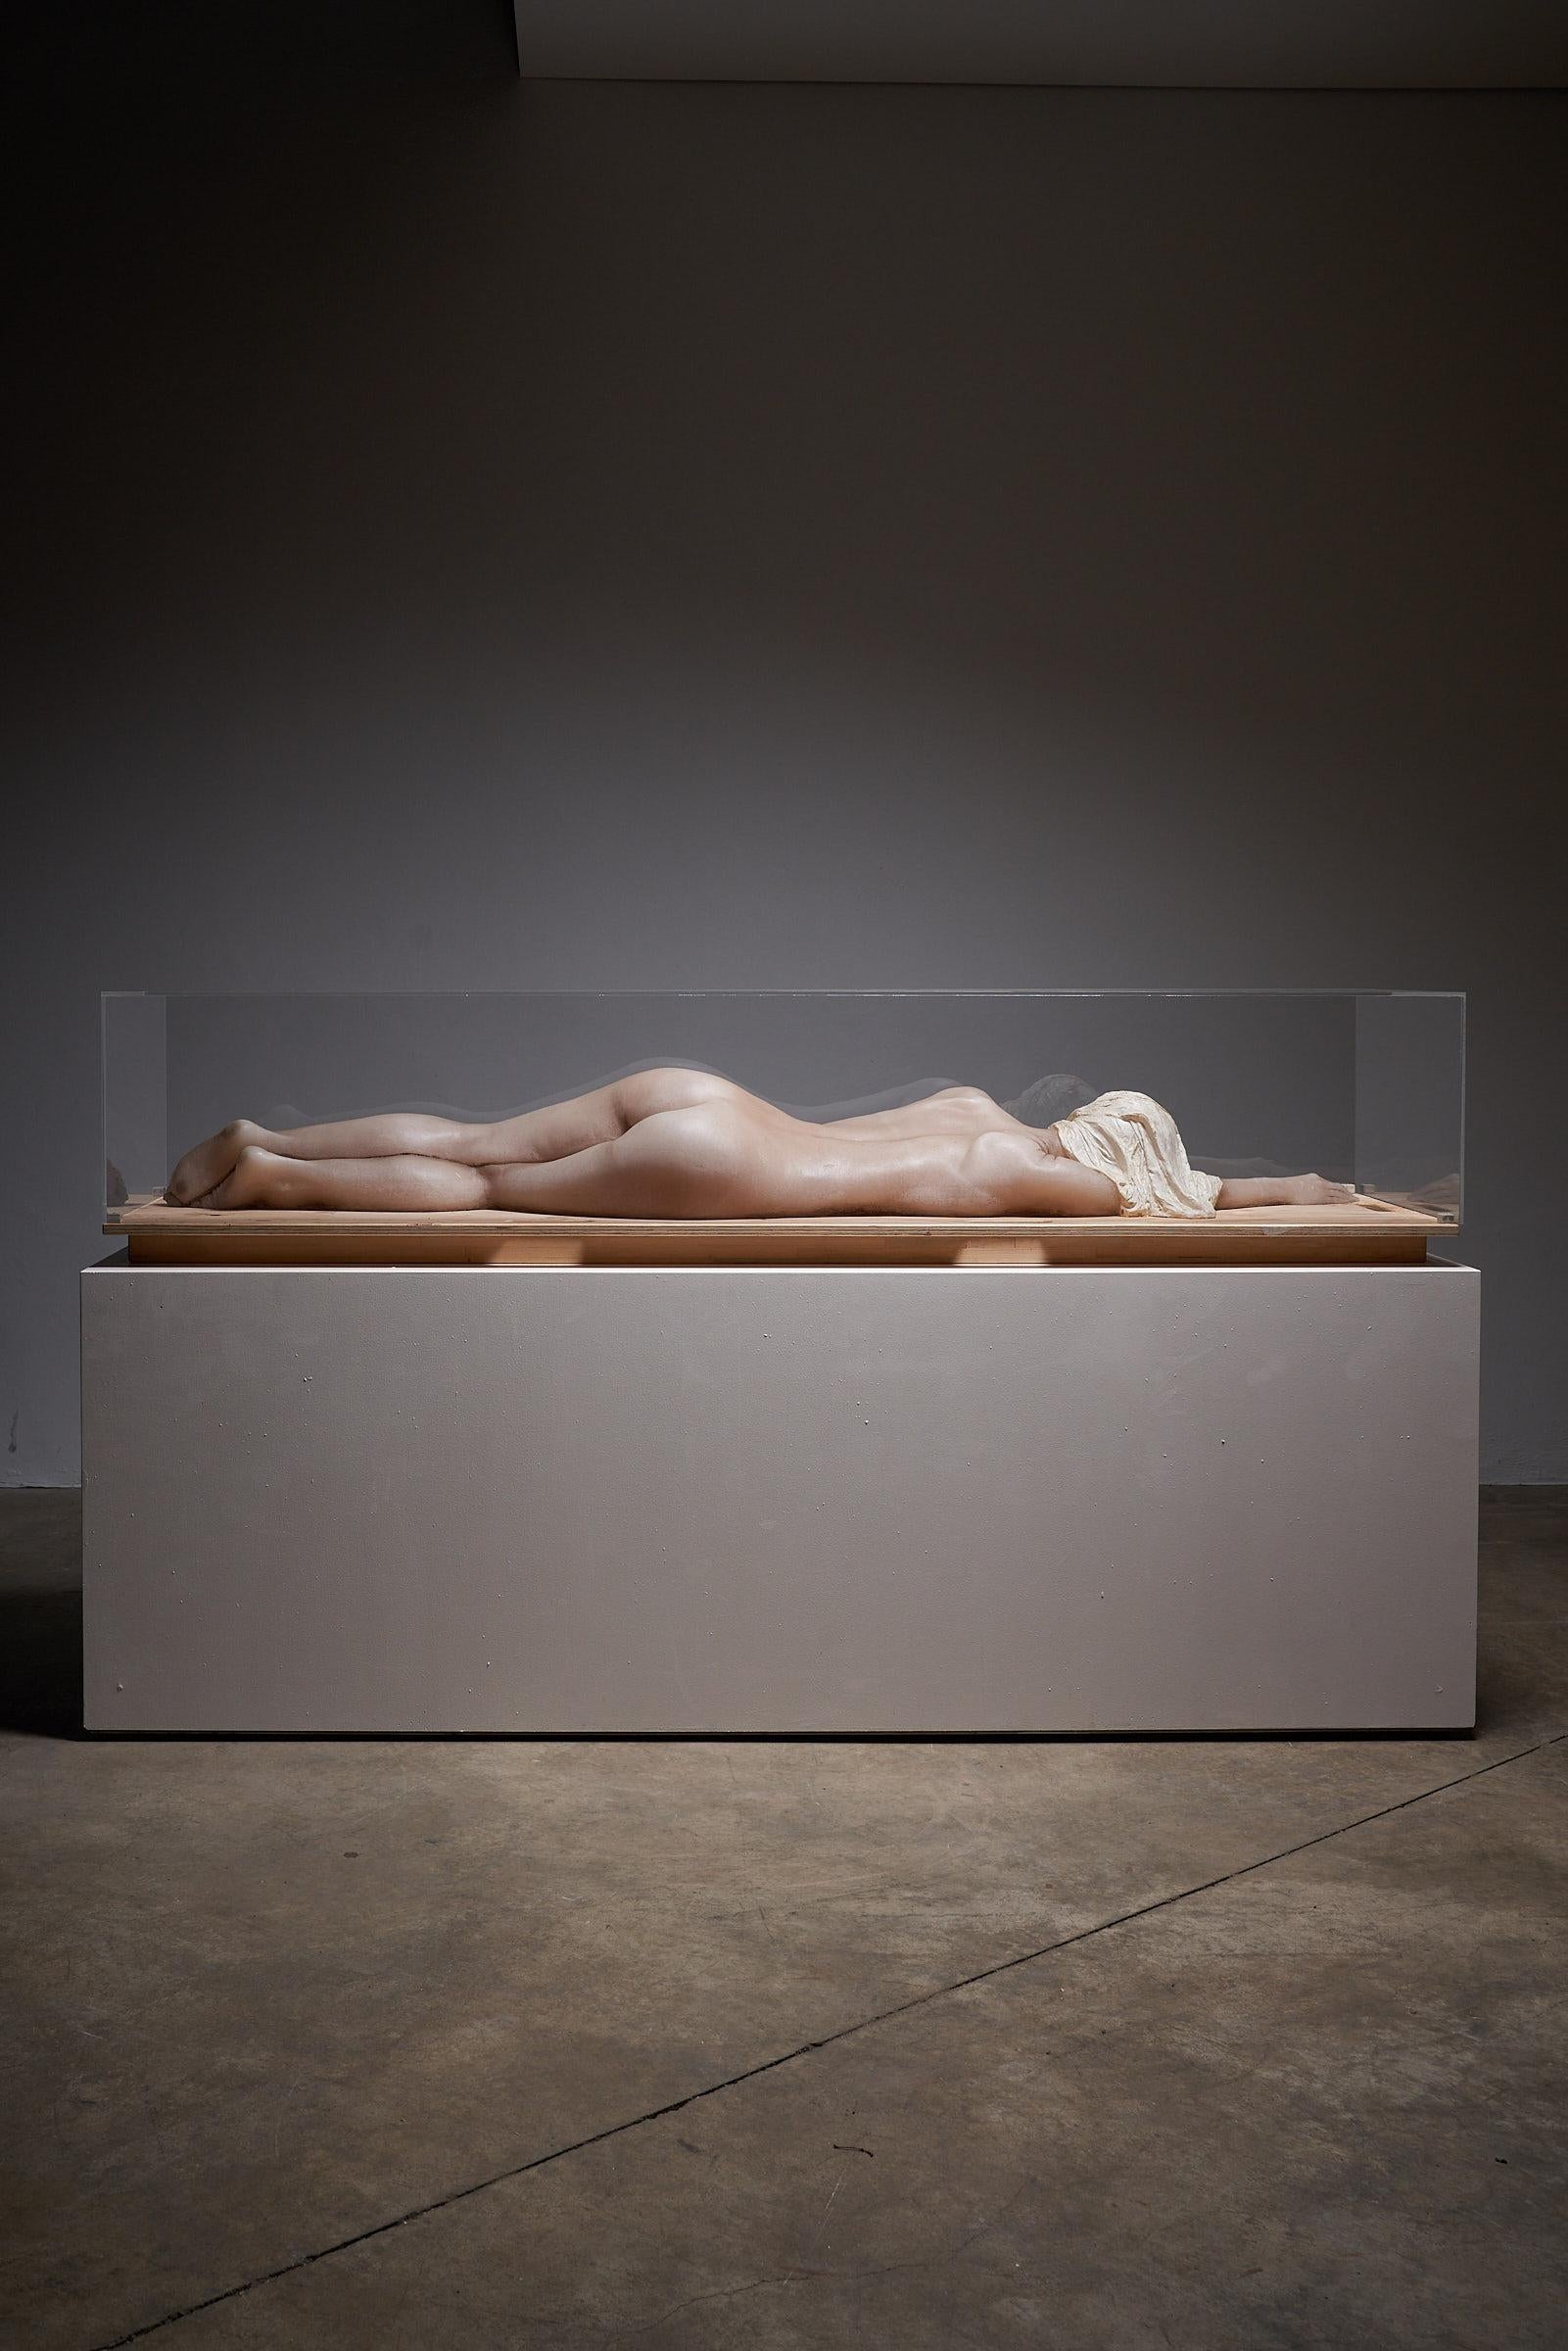 Femme nue en cire dans du plexiglas Pièce d'art. Cette sculpture exceptionnelle représente la figure de cire d'une dame, gracieusement enfermée dans une boîte en plexiglas transparent.